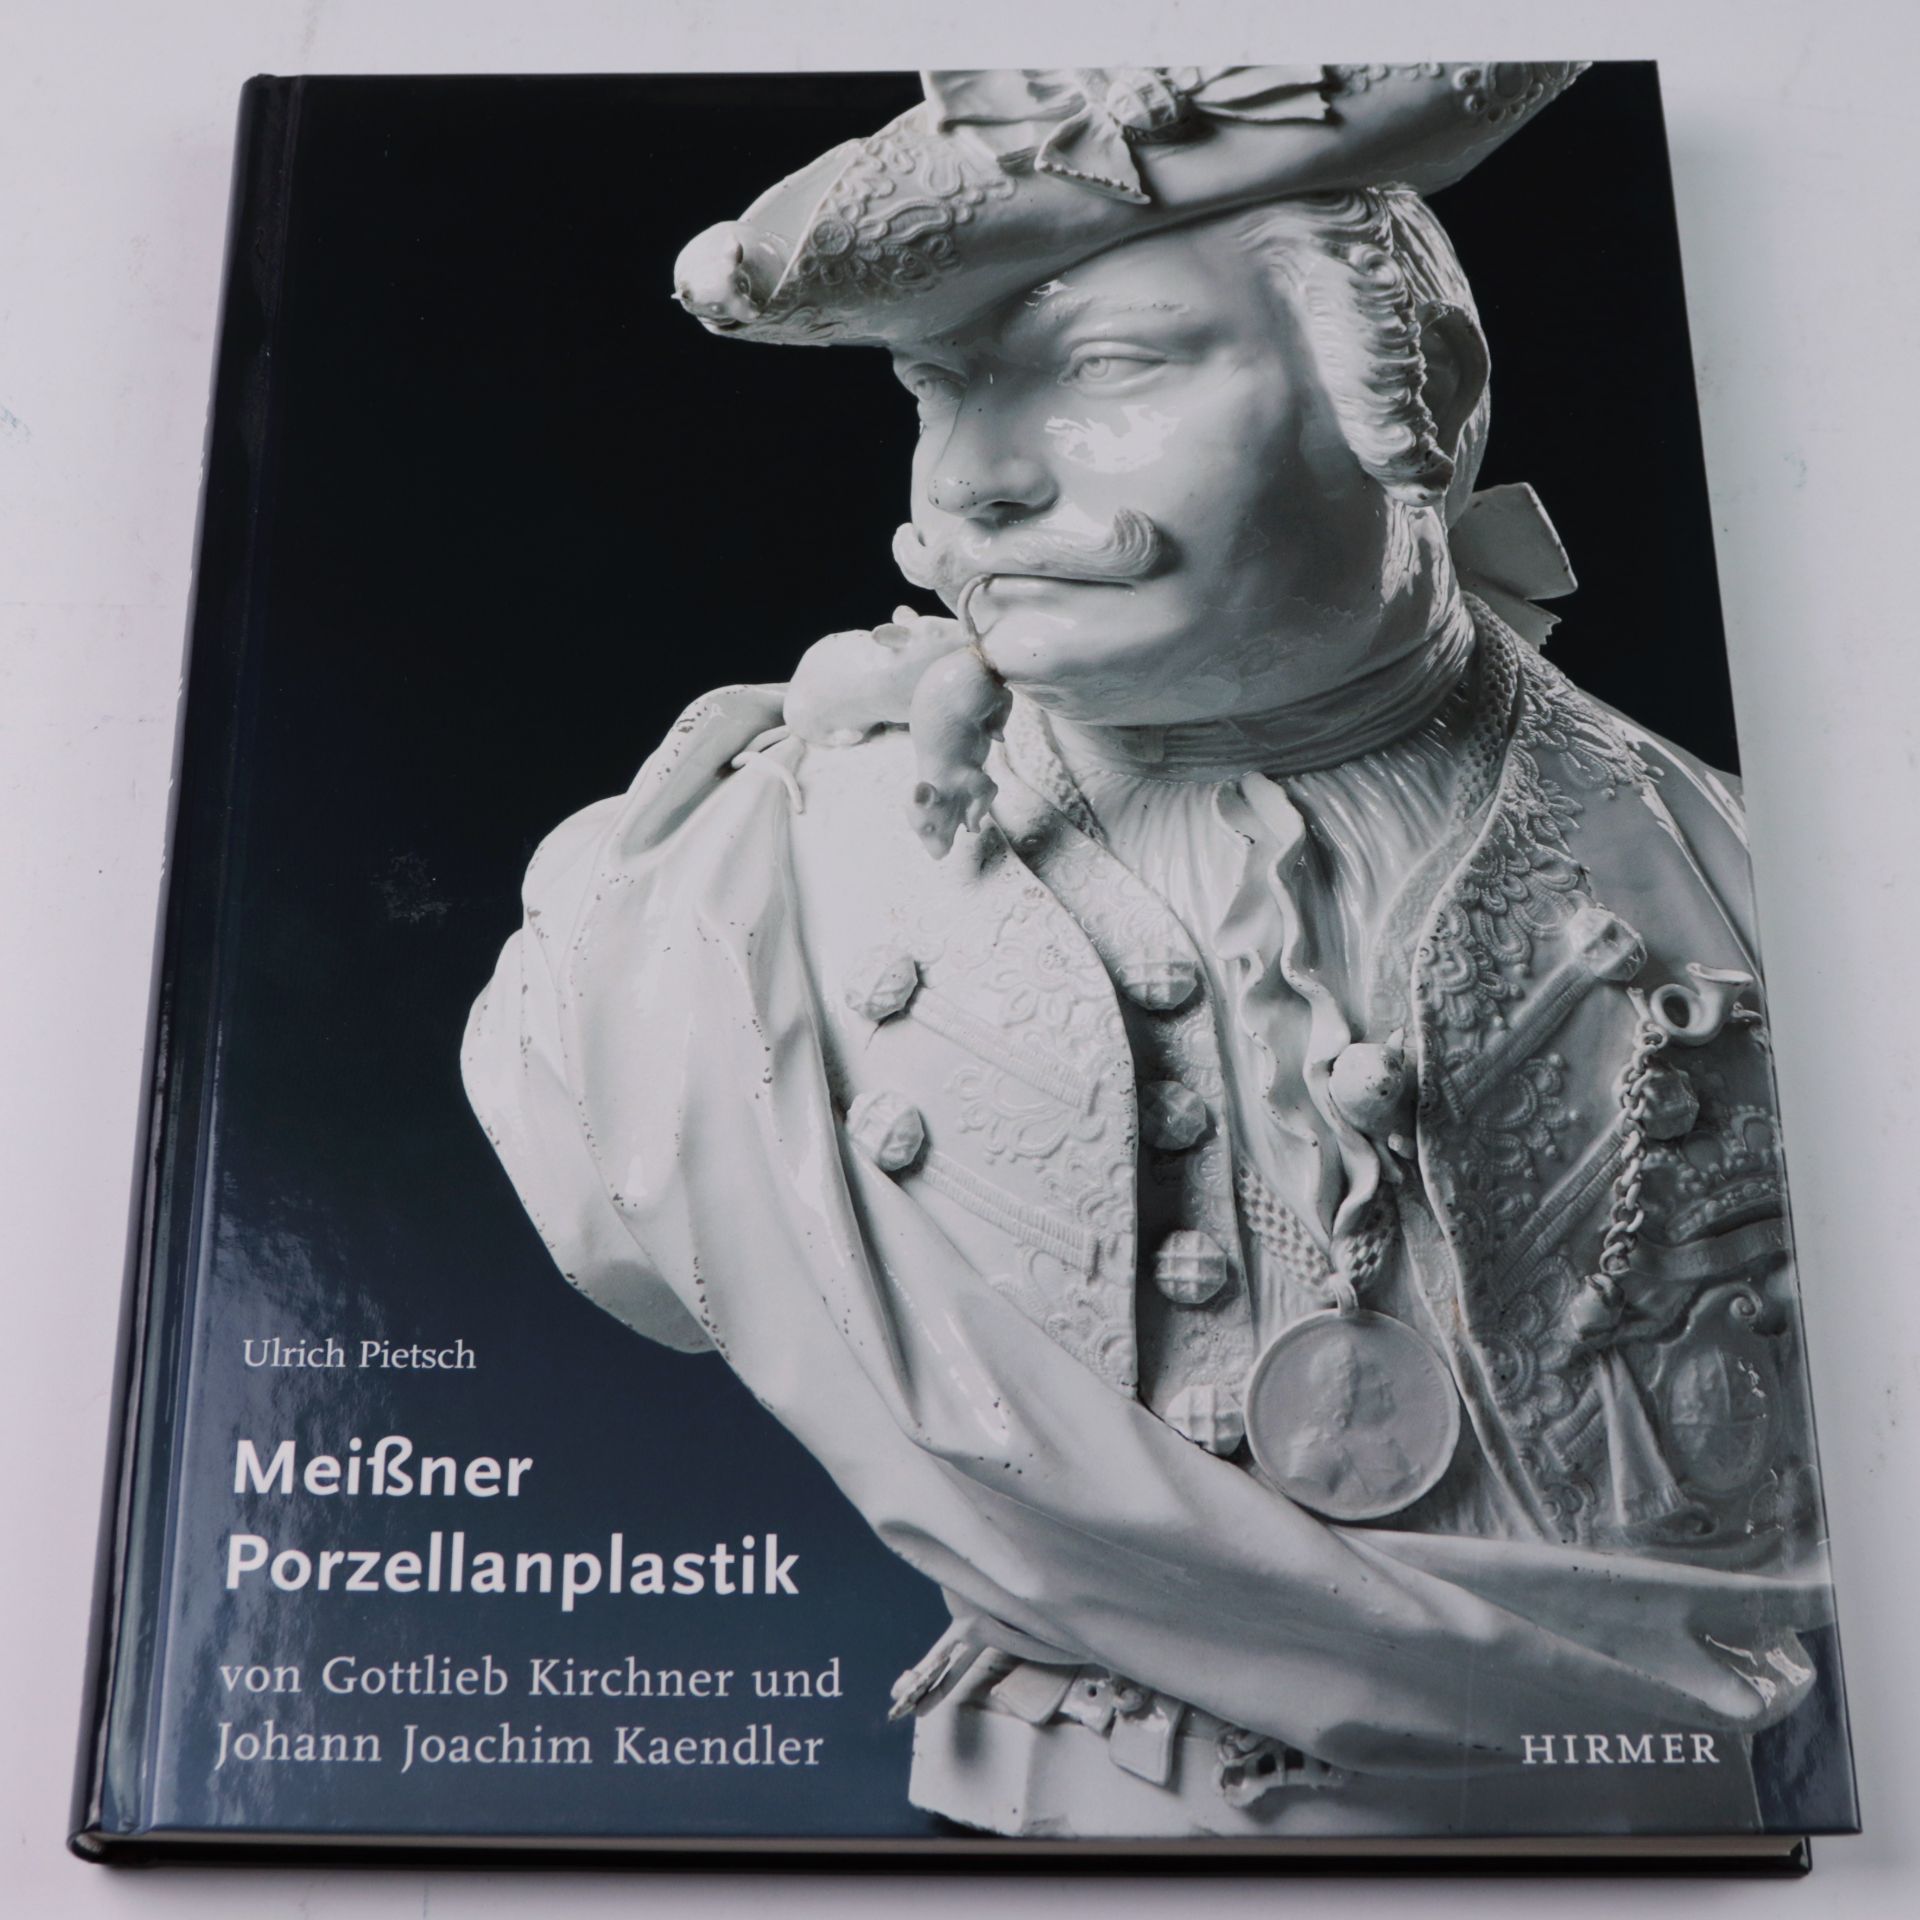 Pietsch, Ulrich "Meißner Porzellanplastik von Gottlieb Kirchner und Johann Joachim Kaendler",